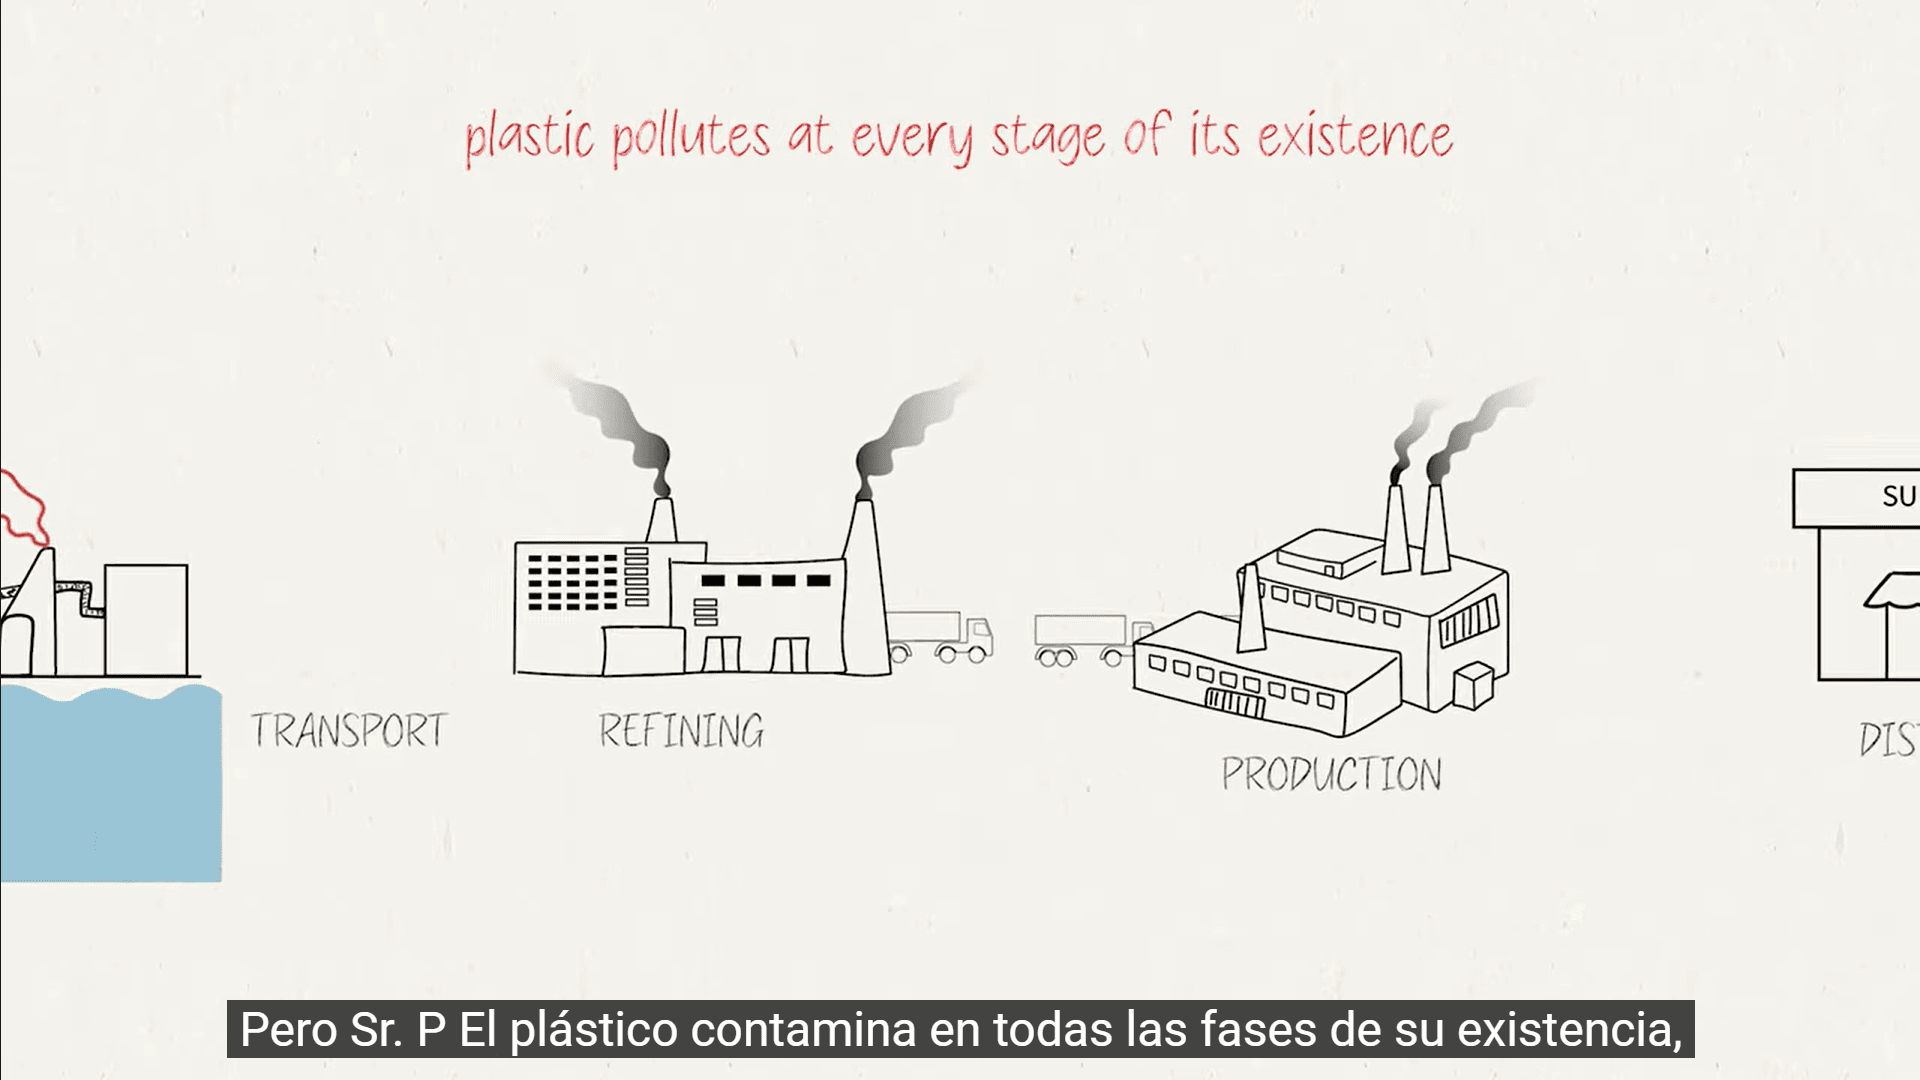 phác họa một số công đoạn sản xuất nhựa, cụ thể là vận chuyển, tinh luyện và sản xuất. dòng chữ trên màn hình: nhựa gây ô nhiễm ở mọi giai đoạn tồn tại của nó; nhựa gây ô nhiễm và tất cả các sự tồn tại của sự tồn tại